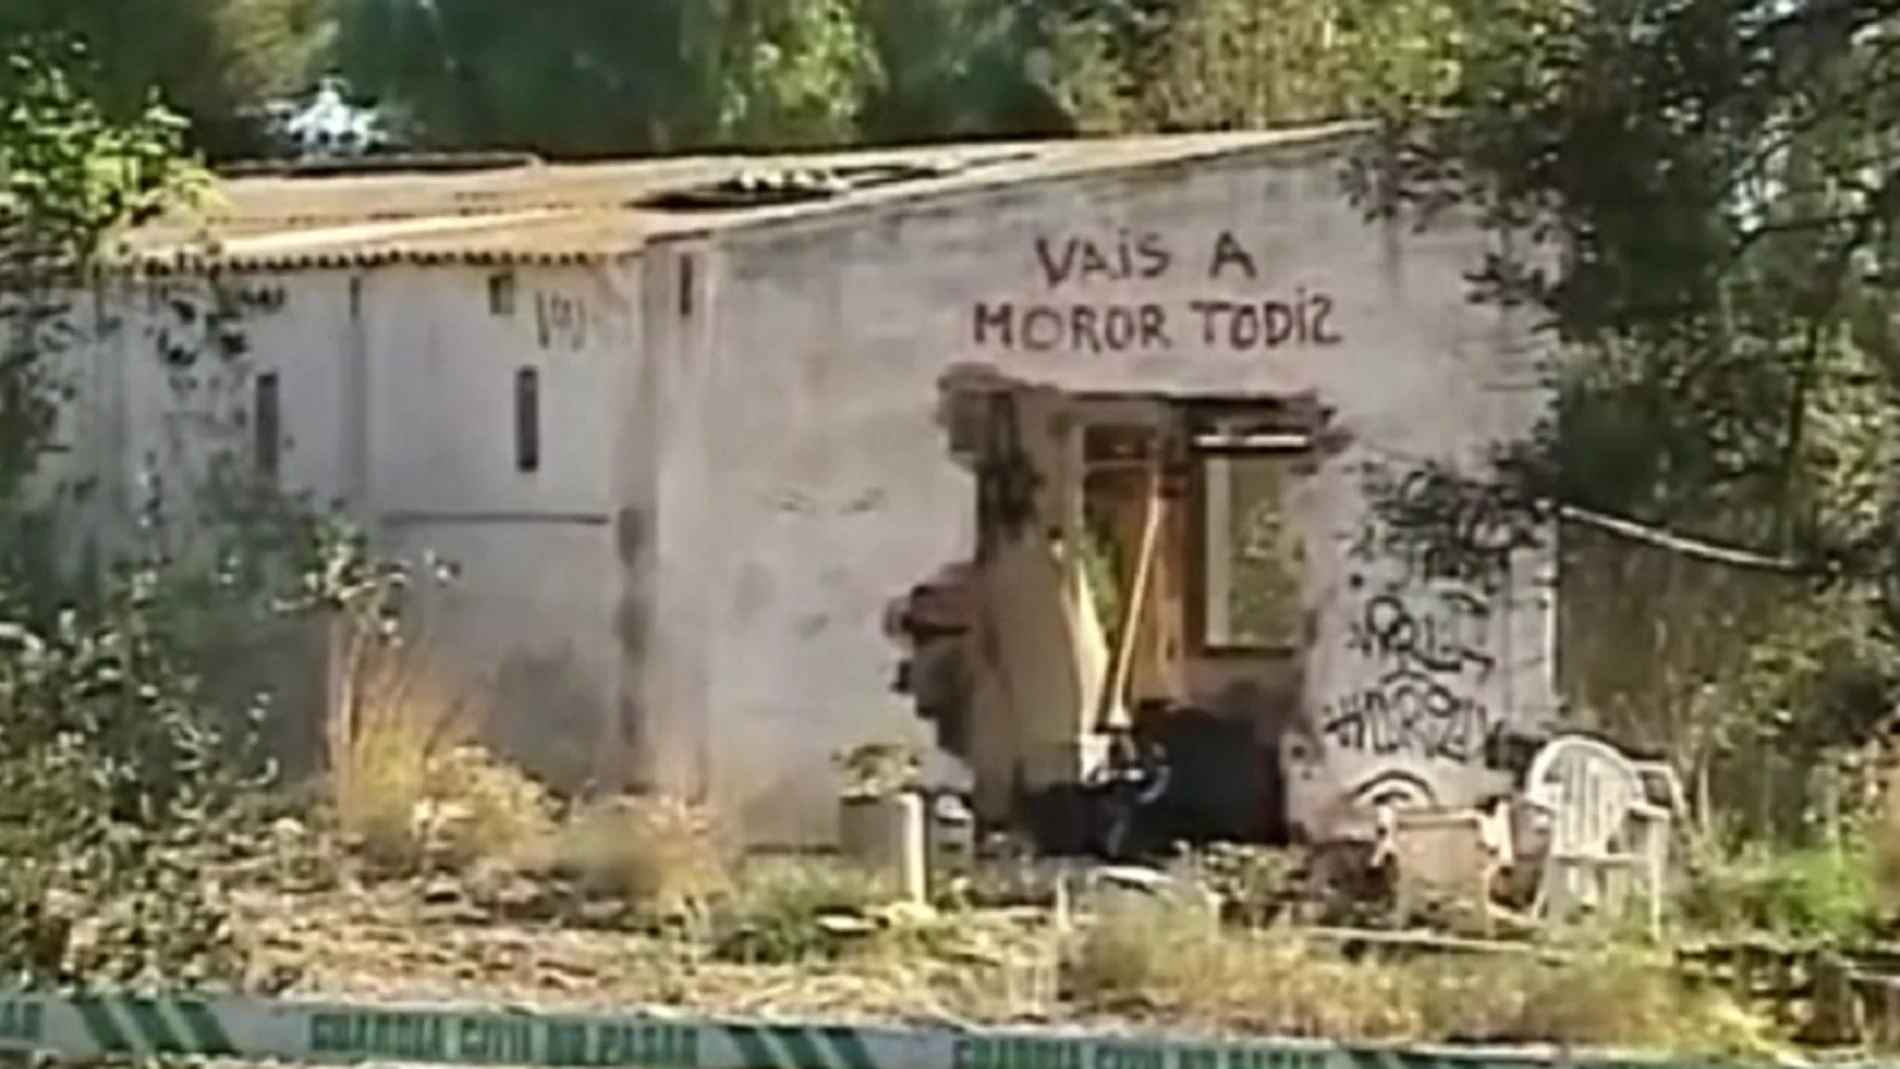 Imagen de la parcela donde vivía la familia de los niños asesinados en Godella